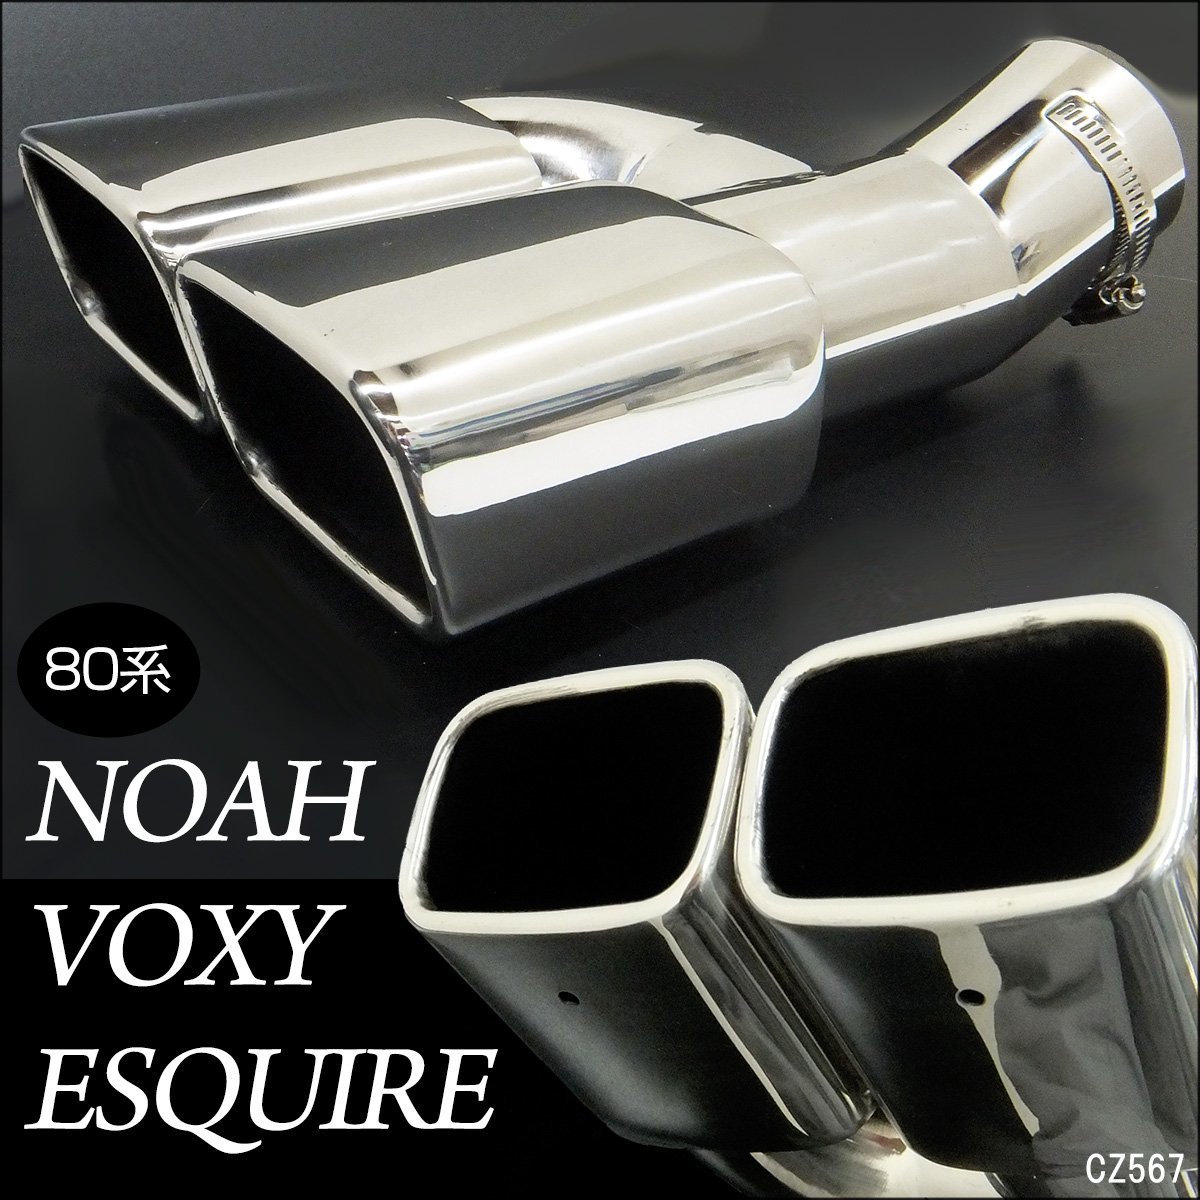  насадка на глушитель 80 серия Noah Voxy Esquire специальный Modellista соответствует из нержавеющей стали 2 трубы /12Д